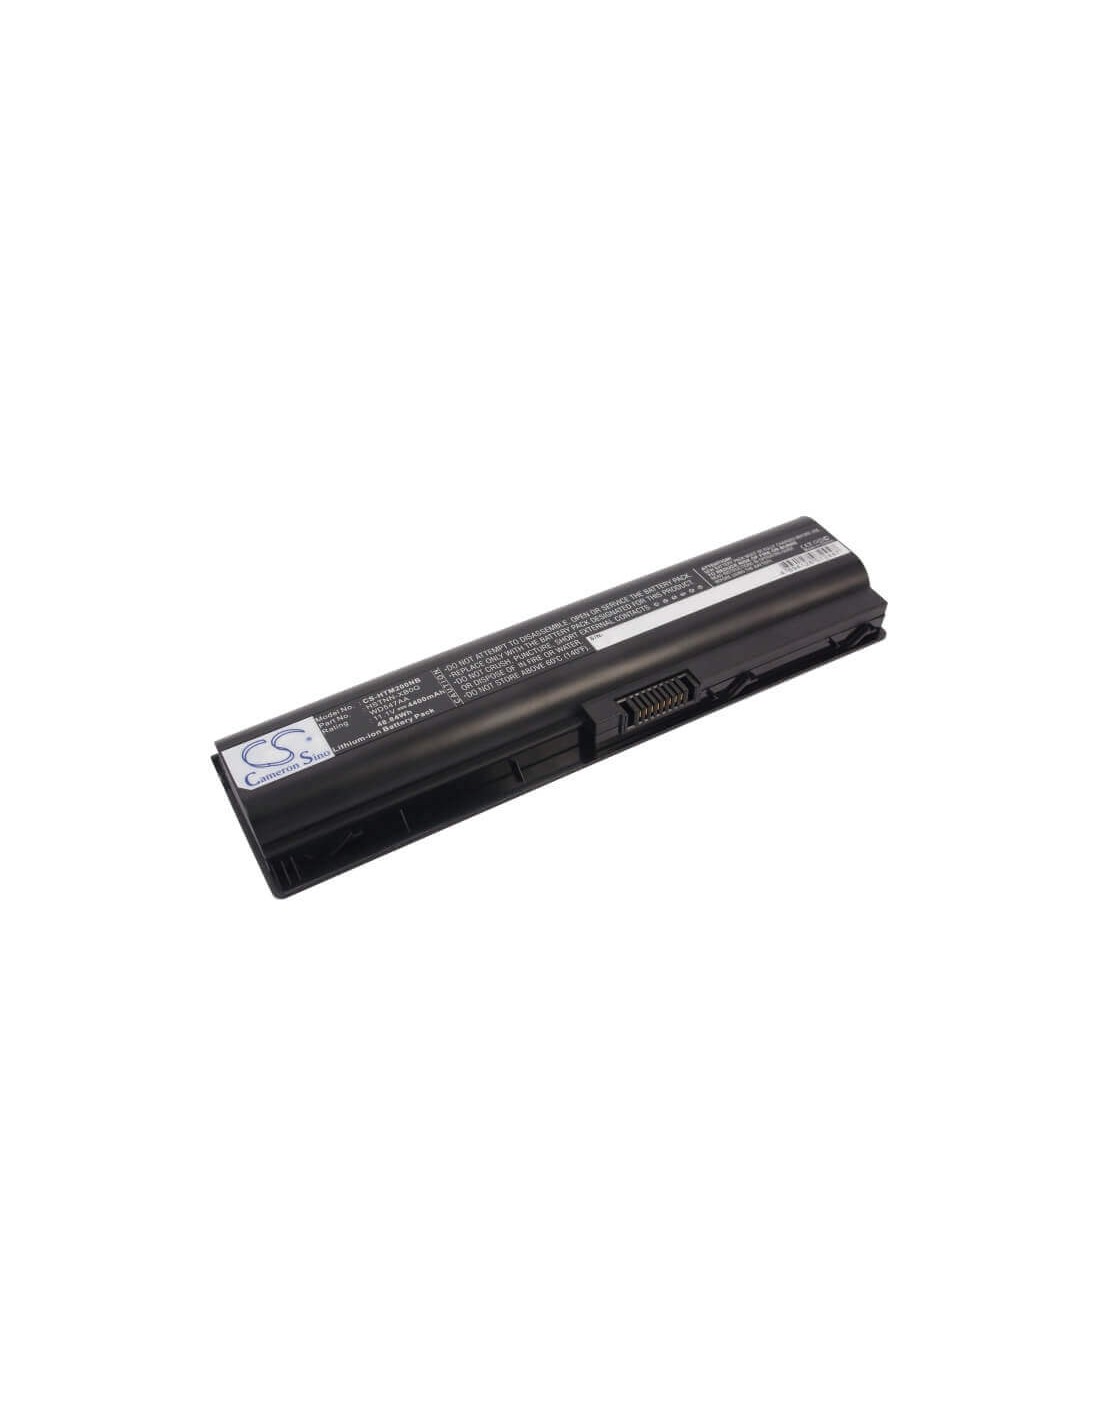 Black Battery for HP TouchSmart tm2-2200, TouchSmart tm2t, TouchSmart tm2t-1000 11.1V, 4400mAh - 48.84Wh